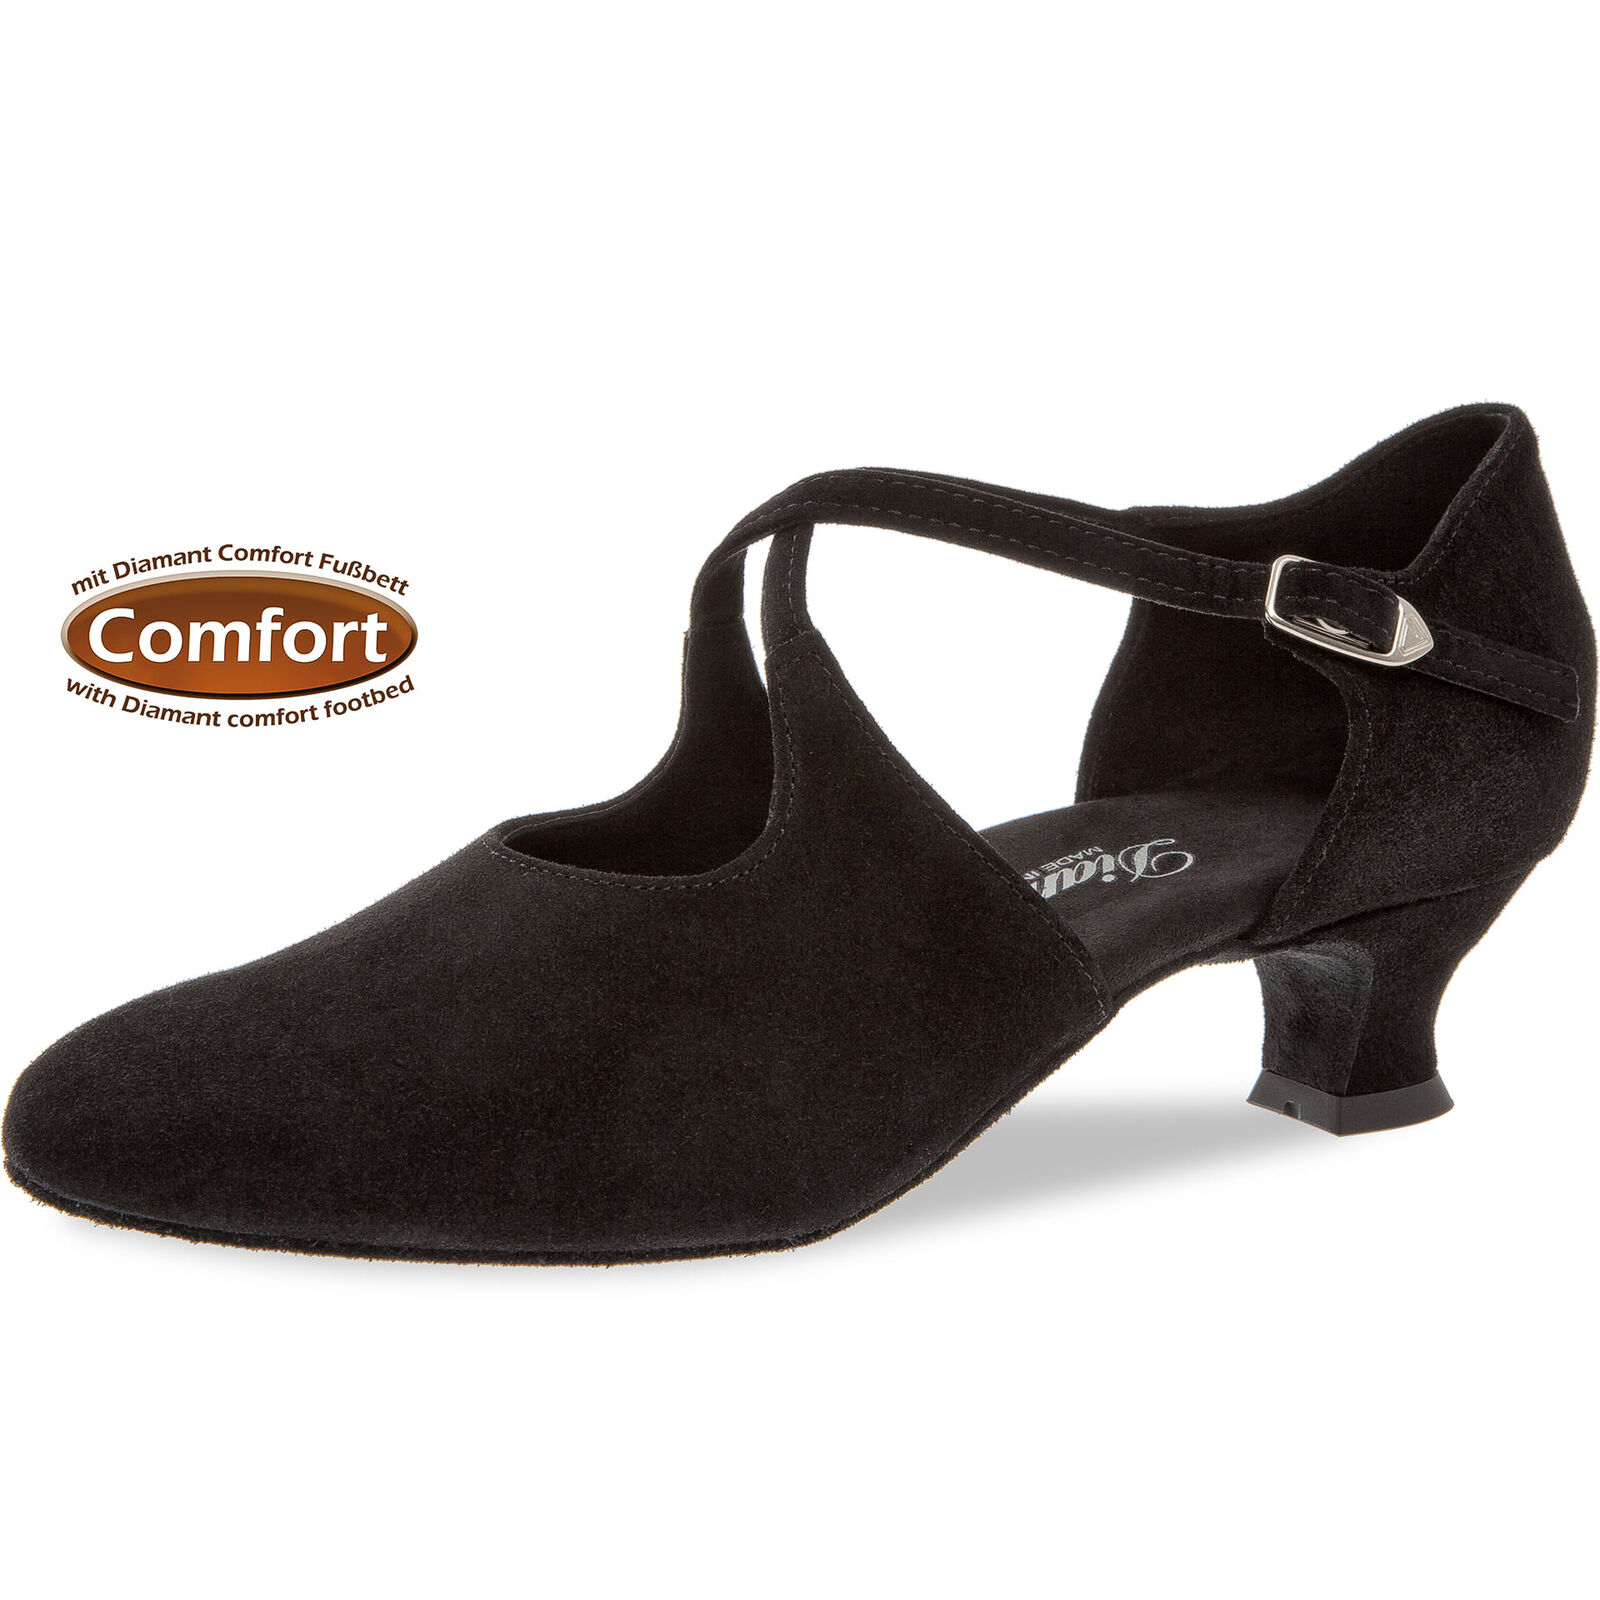 Komfort auch für breitere Füße